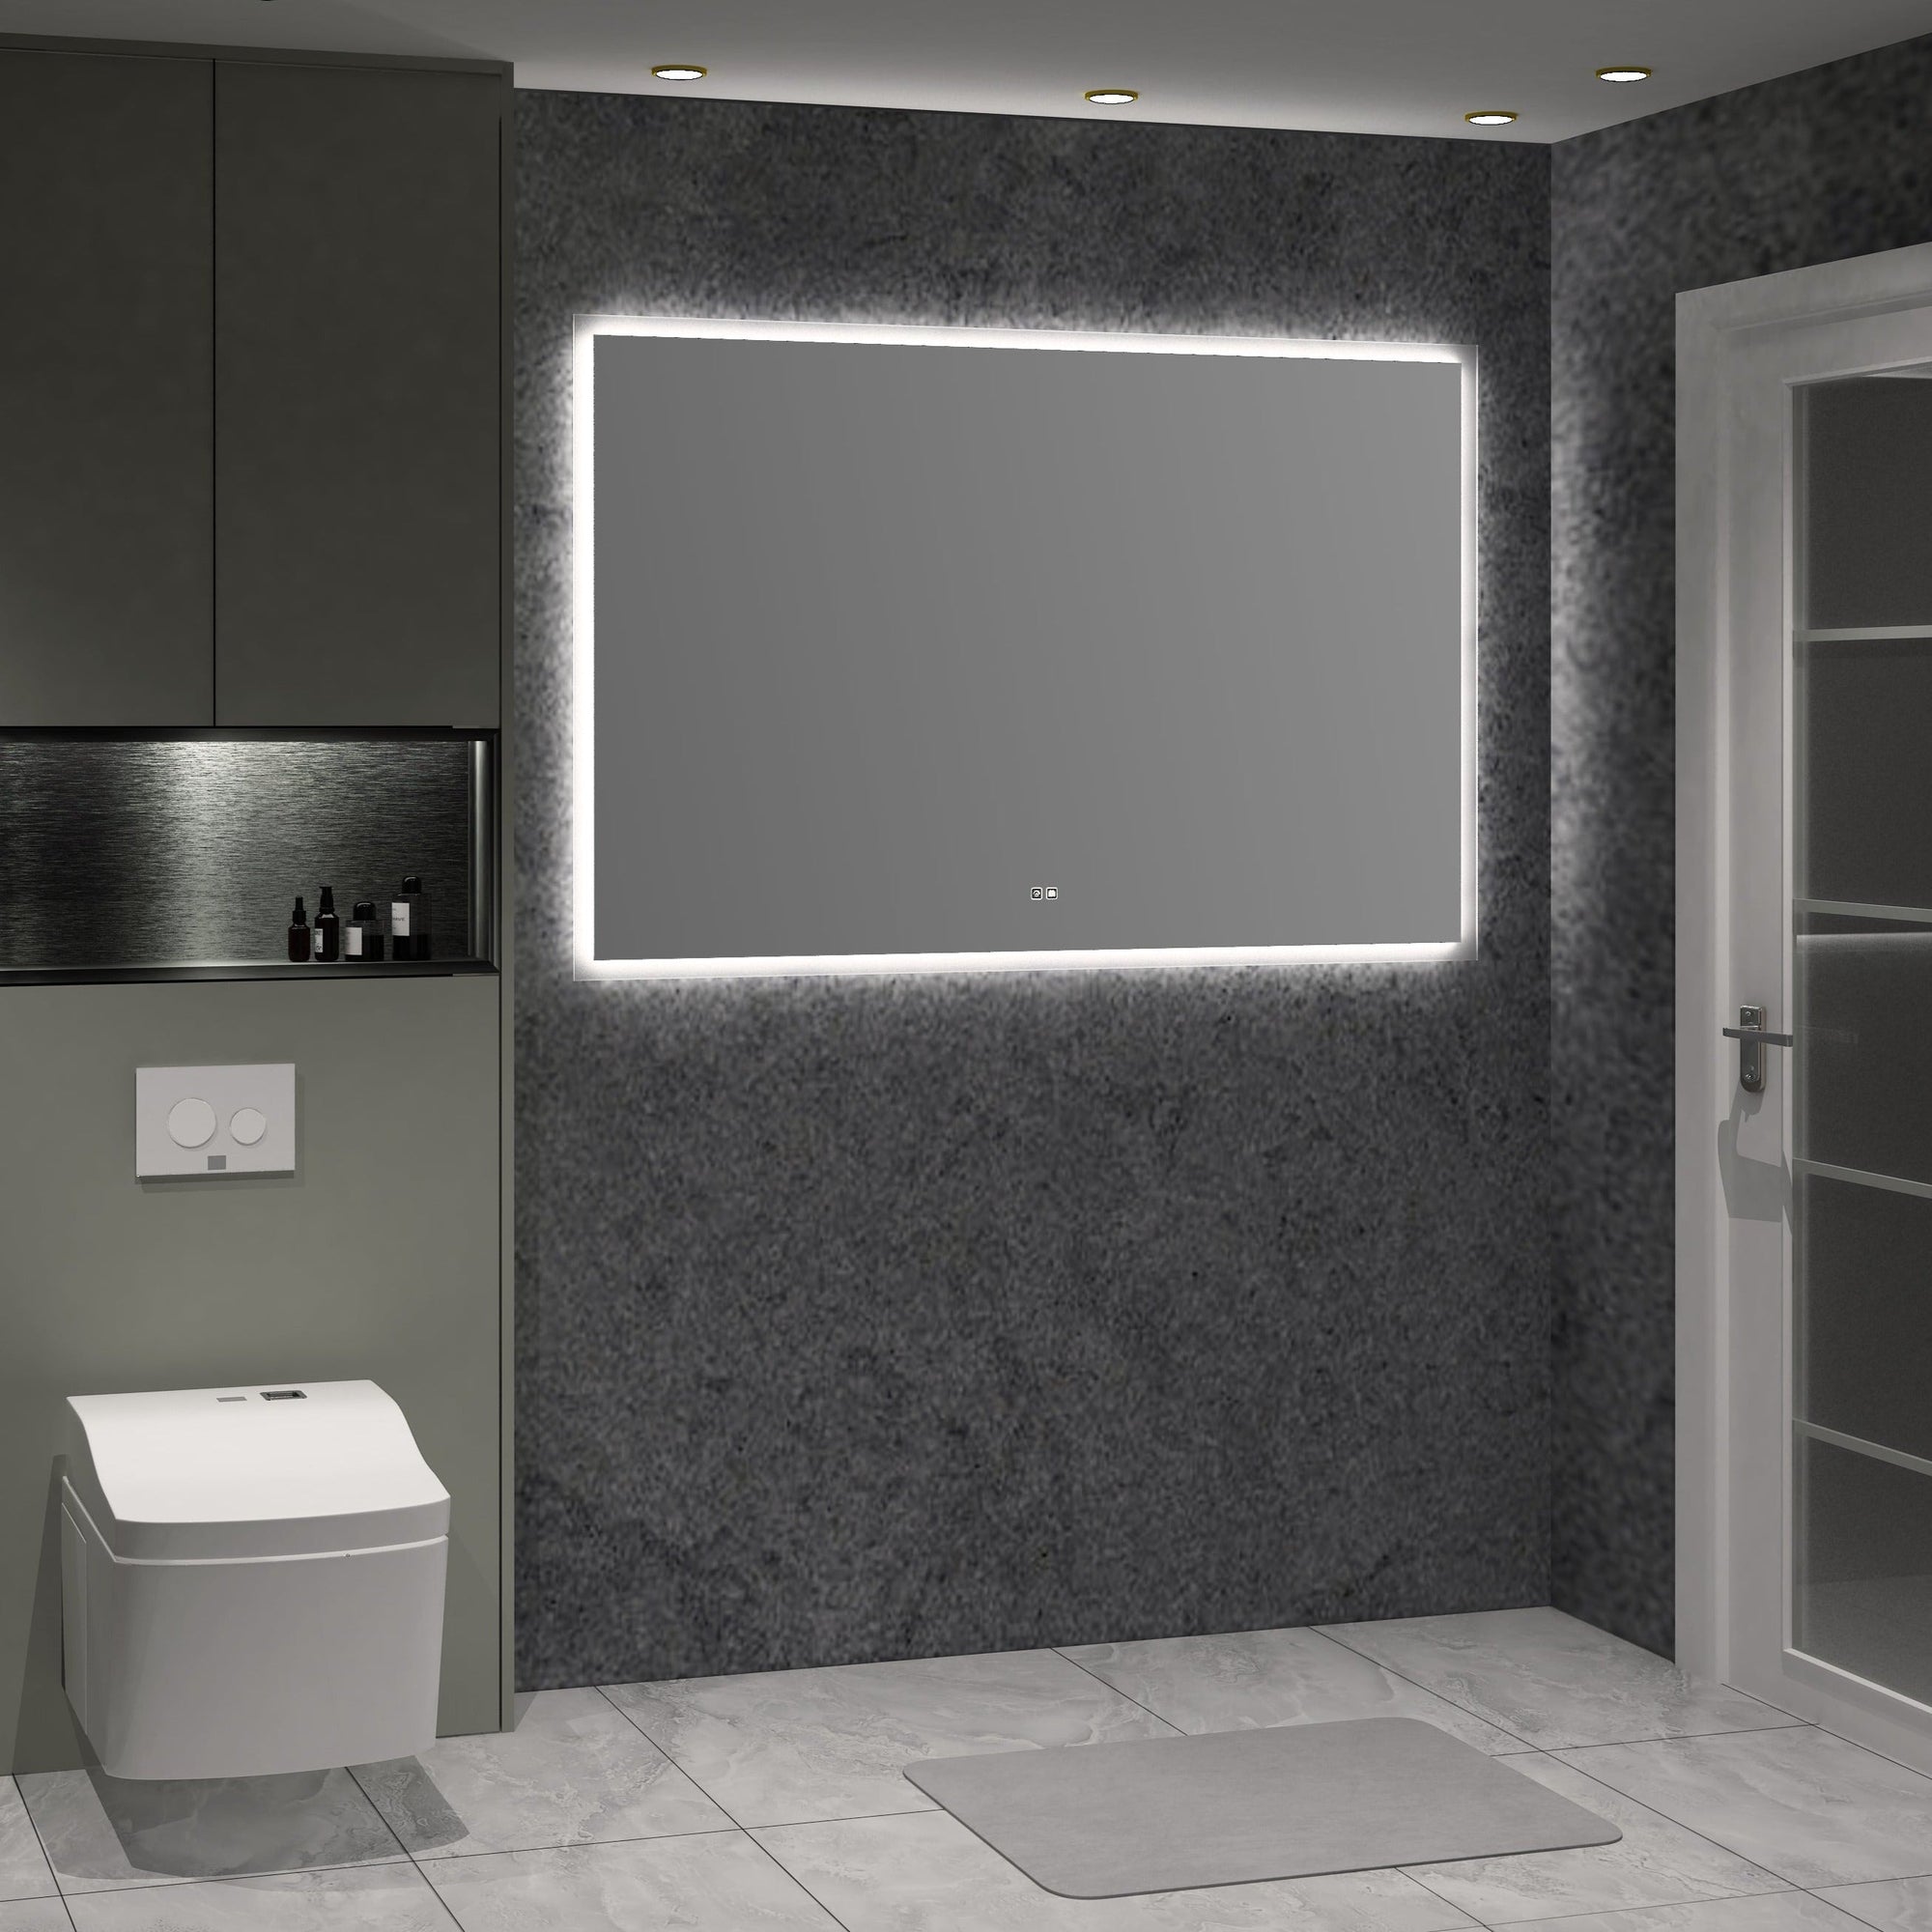 Apollo Rectangle Backlit LED Bathroom Mirror 150cm x 100cm Vanities & Mirrors Arova 